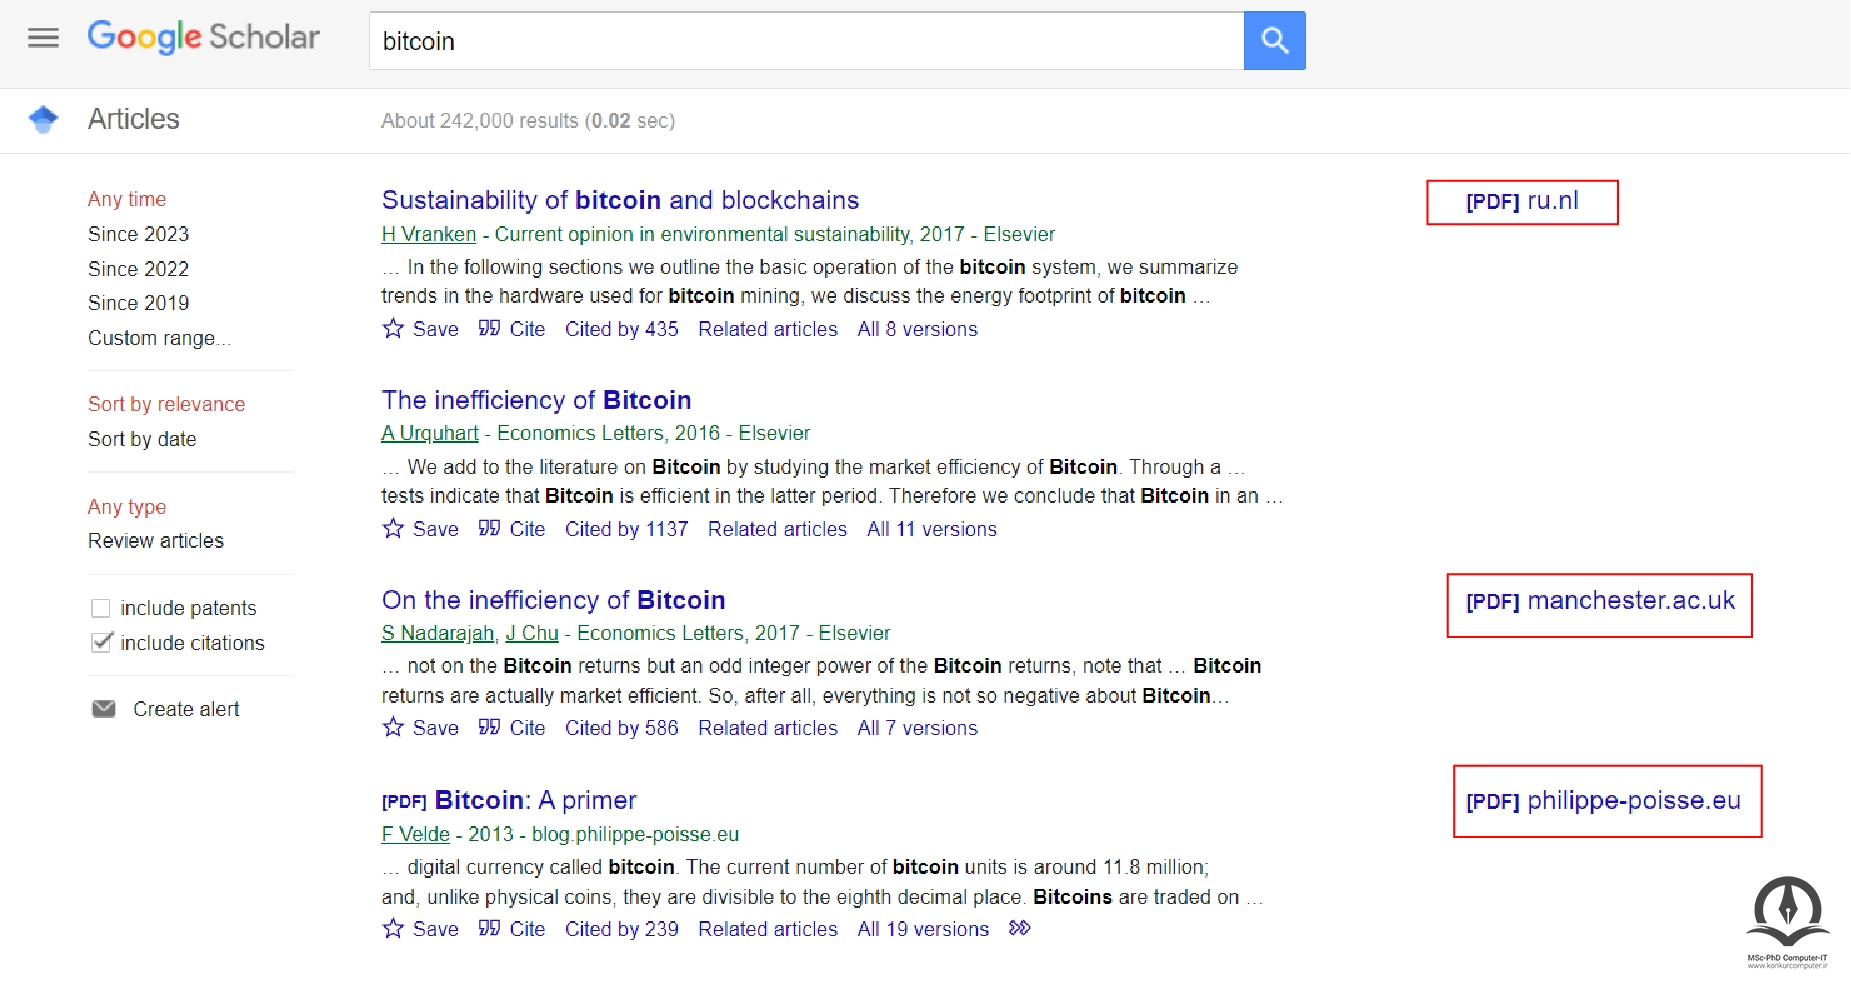 نتیجه ی سرچ کلمه ی Bitcoin در گوگل اسکالر